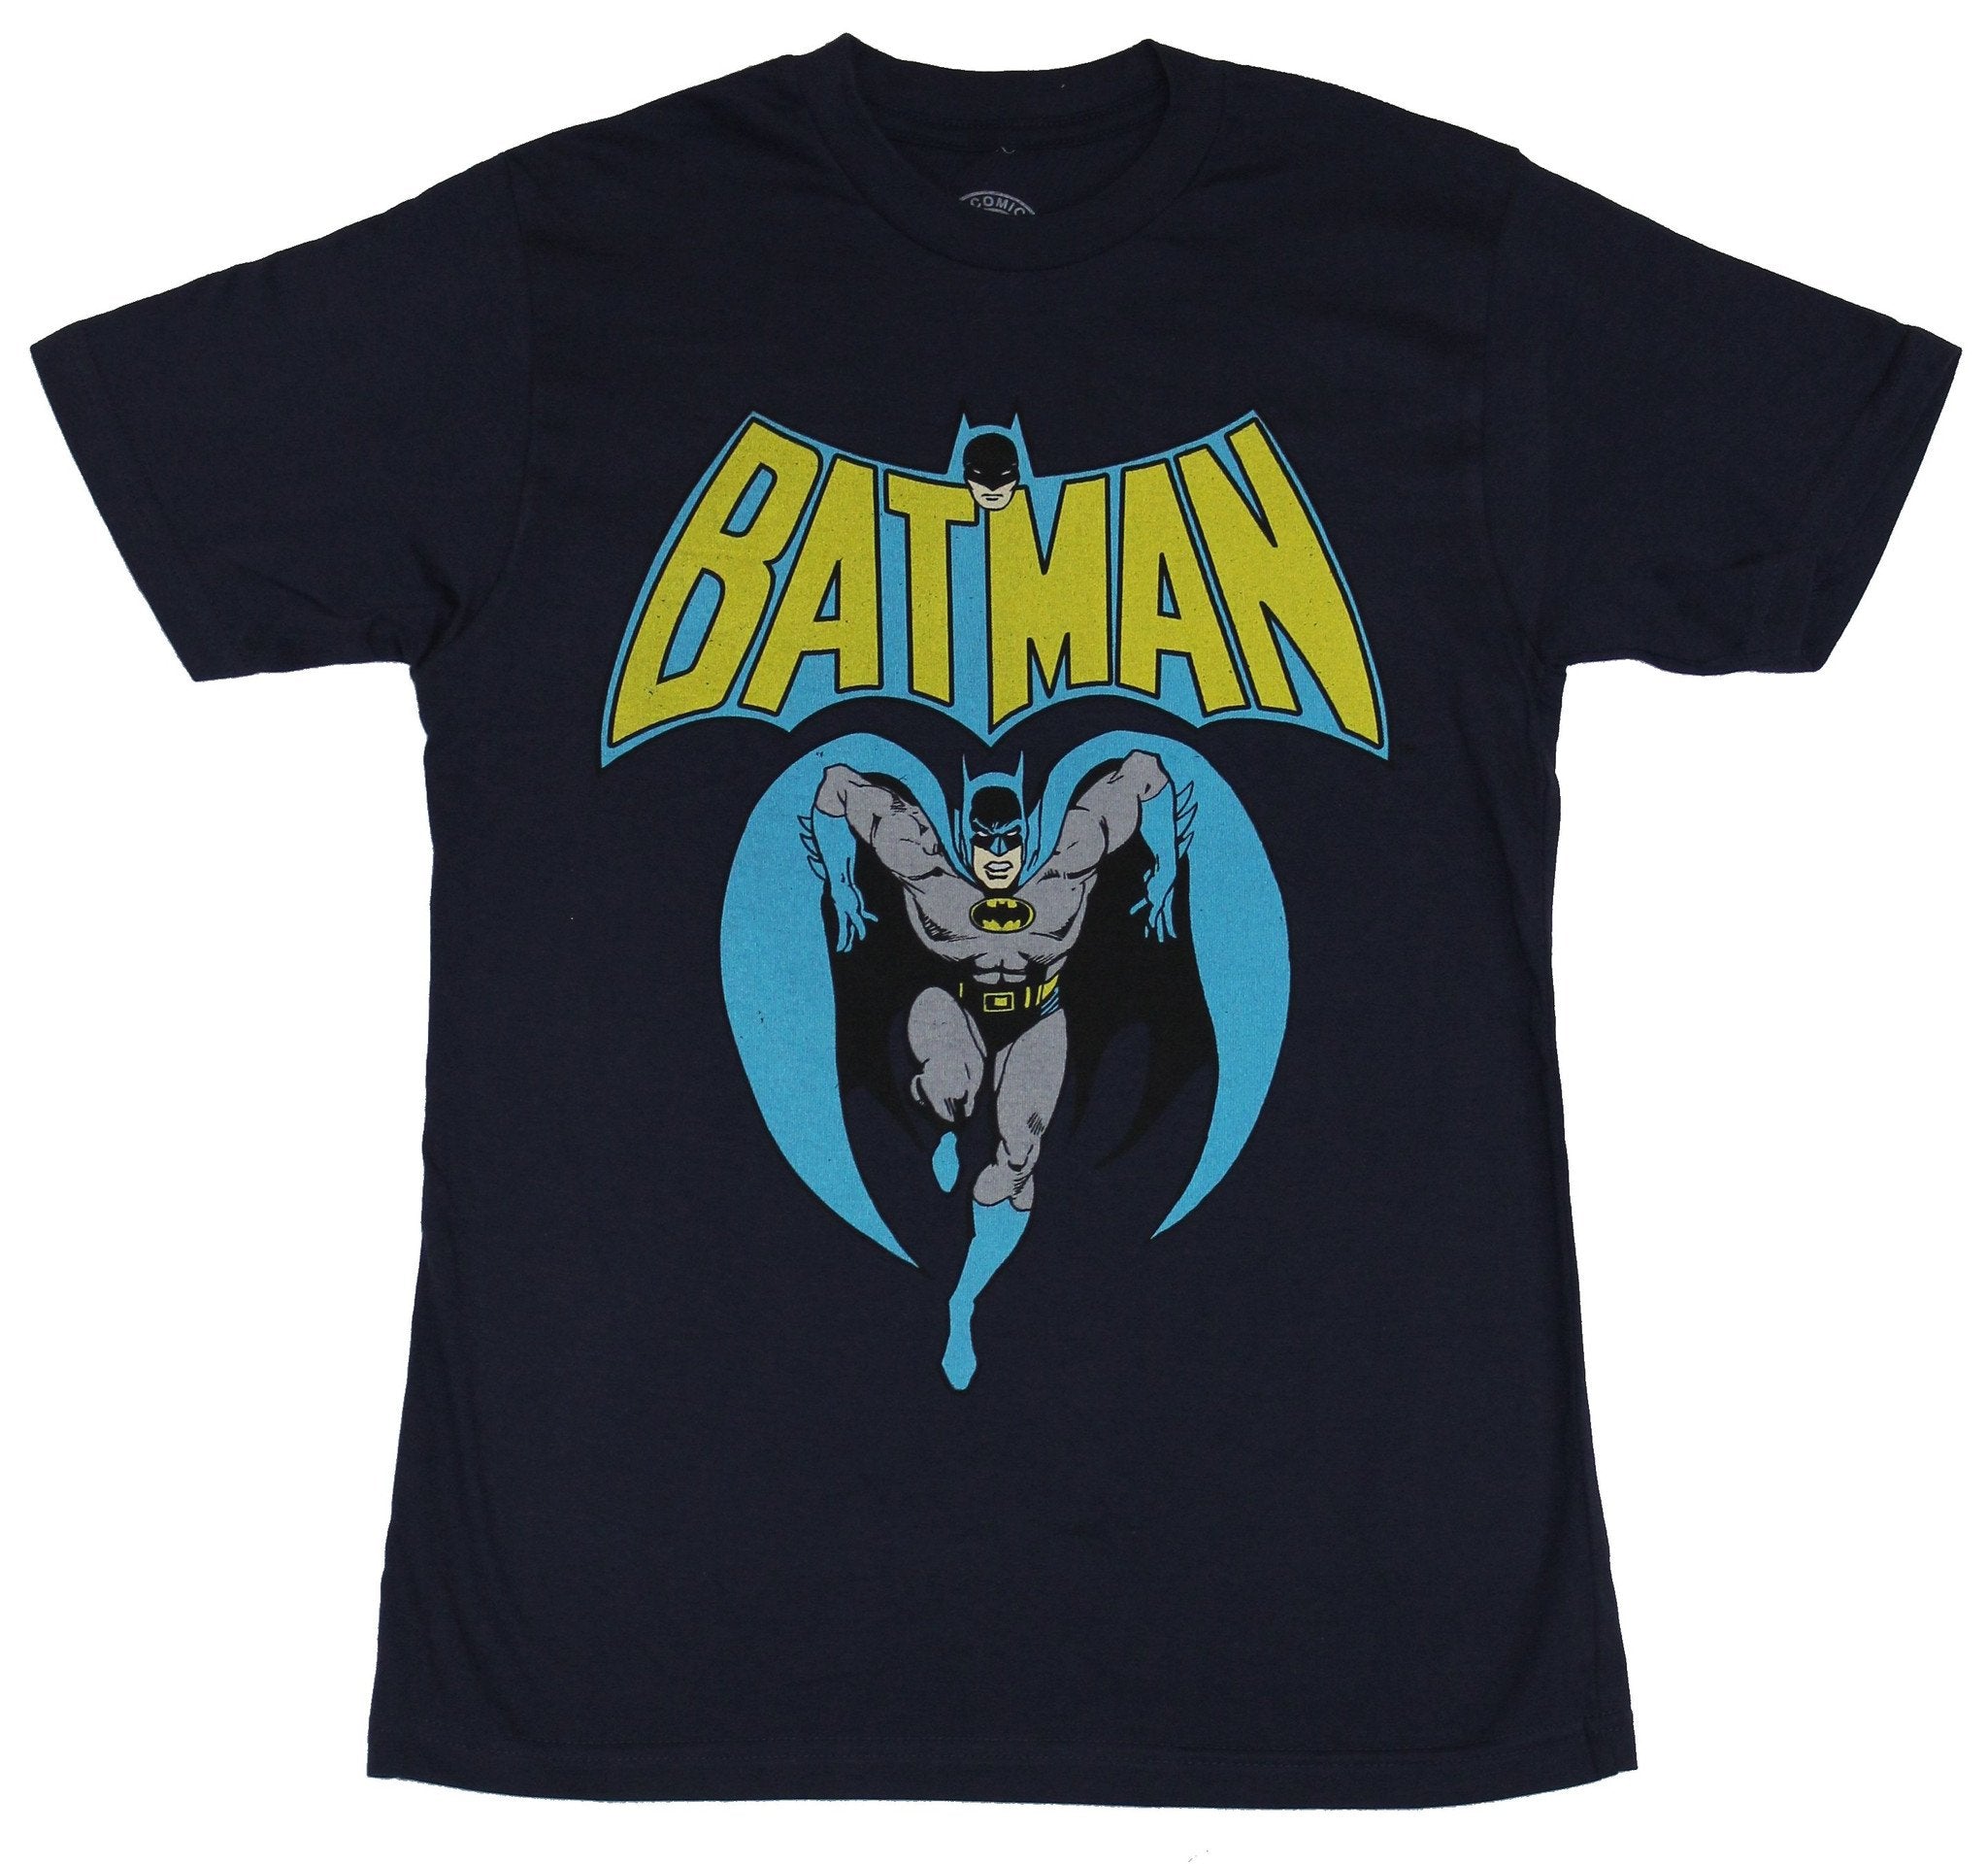 Batman (DC Comics) Mens T-Shirt - Running Rush Bats Under Old School L